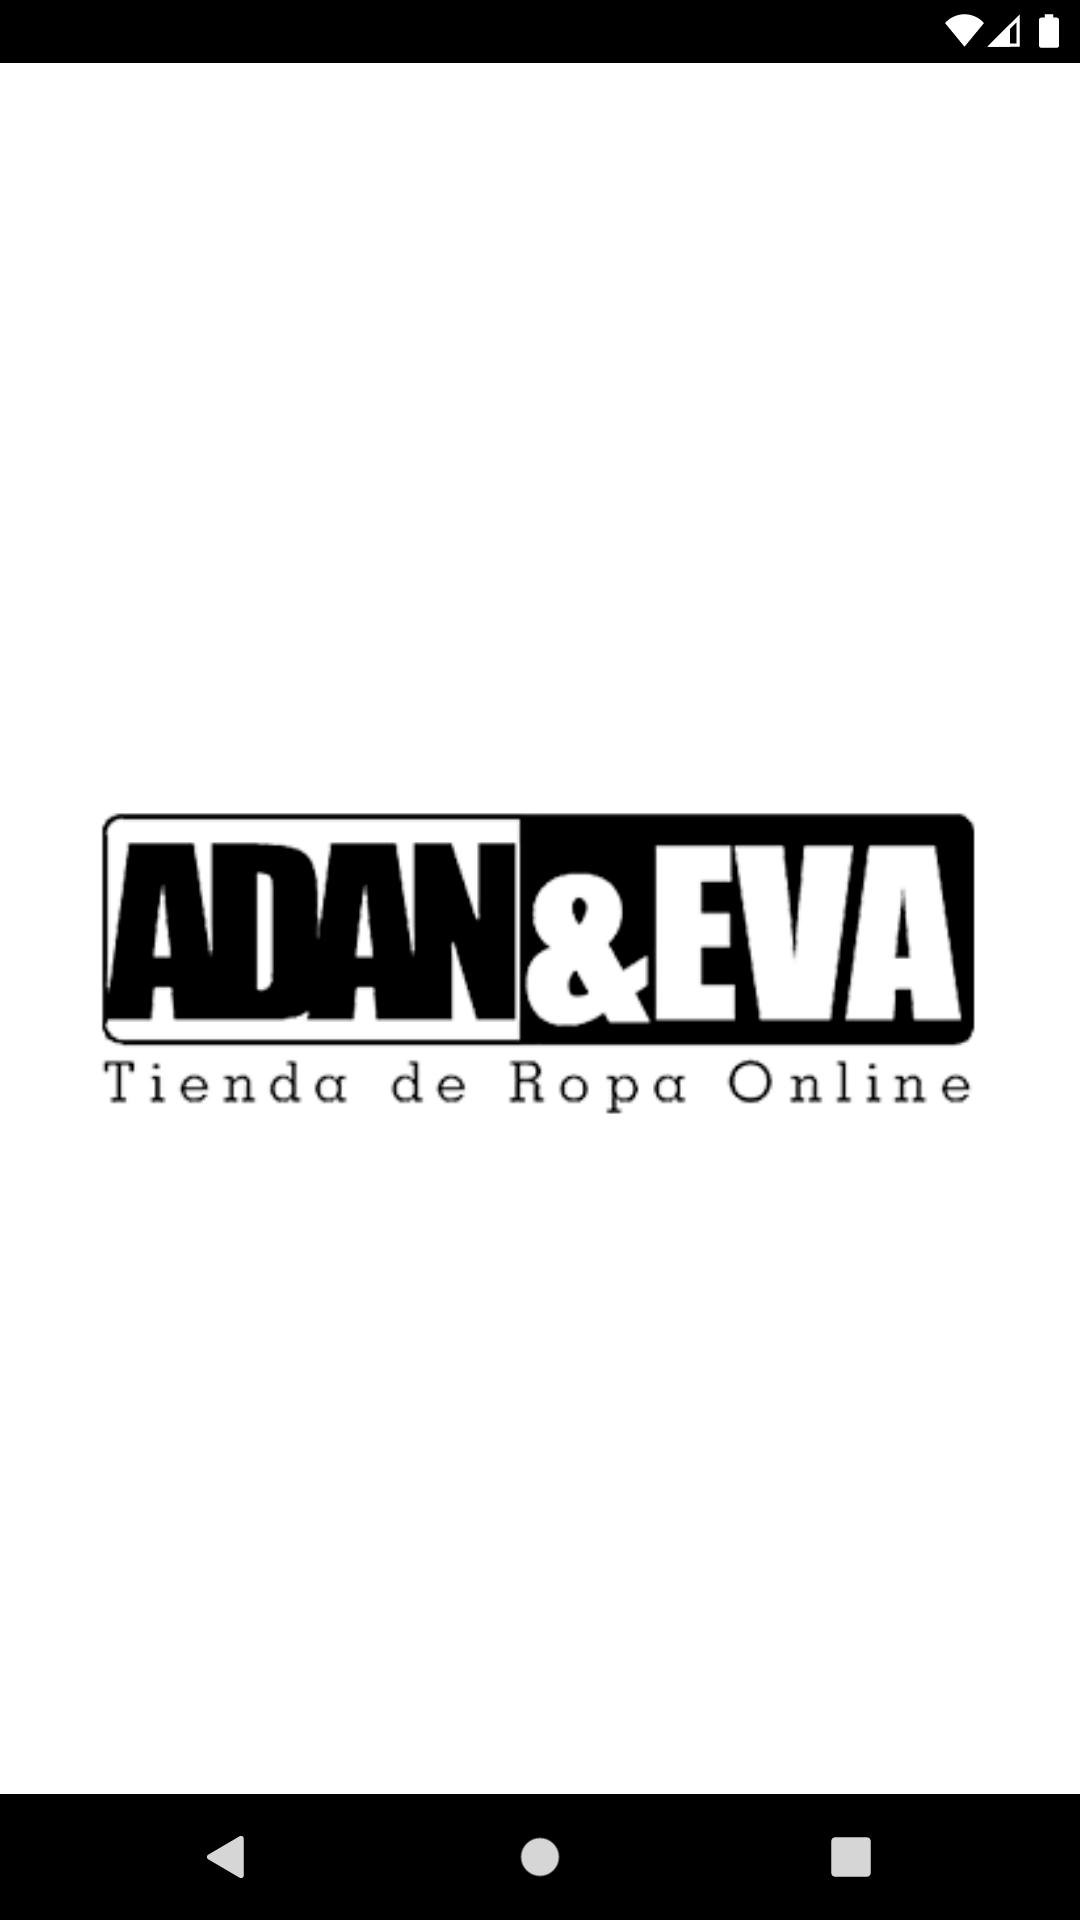 Adan & Eva Tienda de Ropa Online APK for Android Download